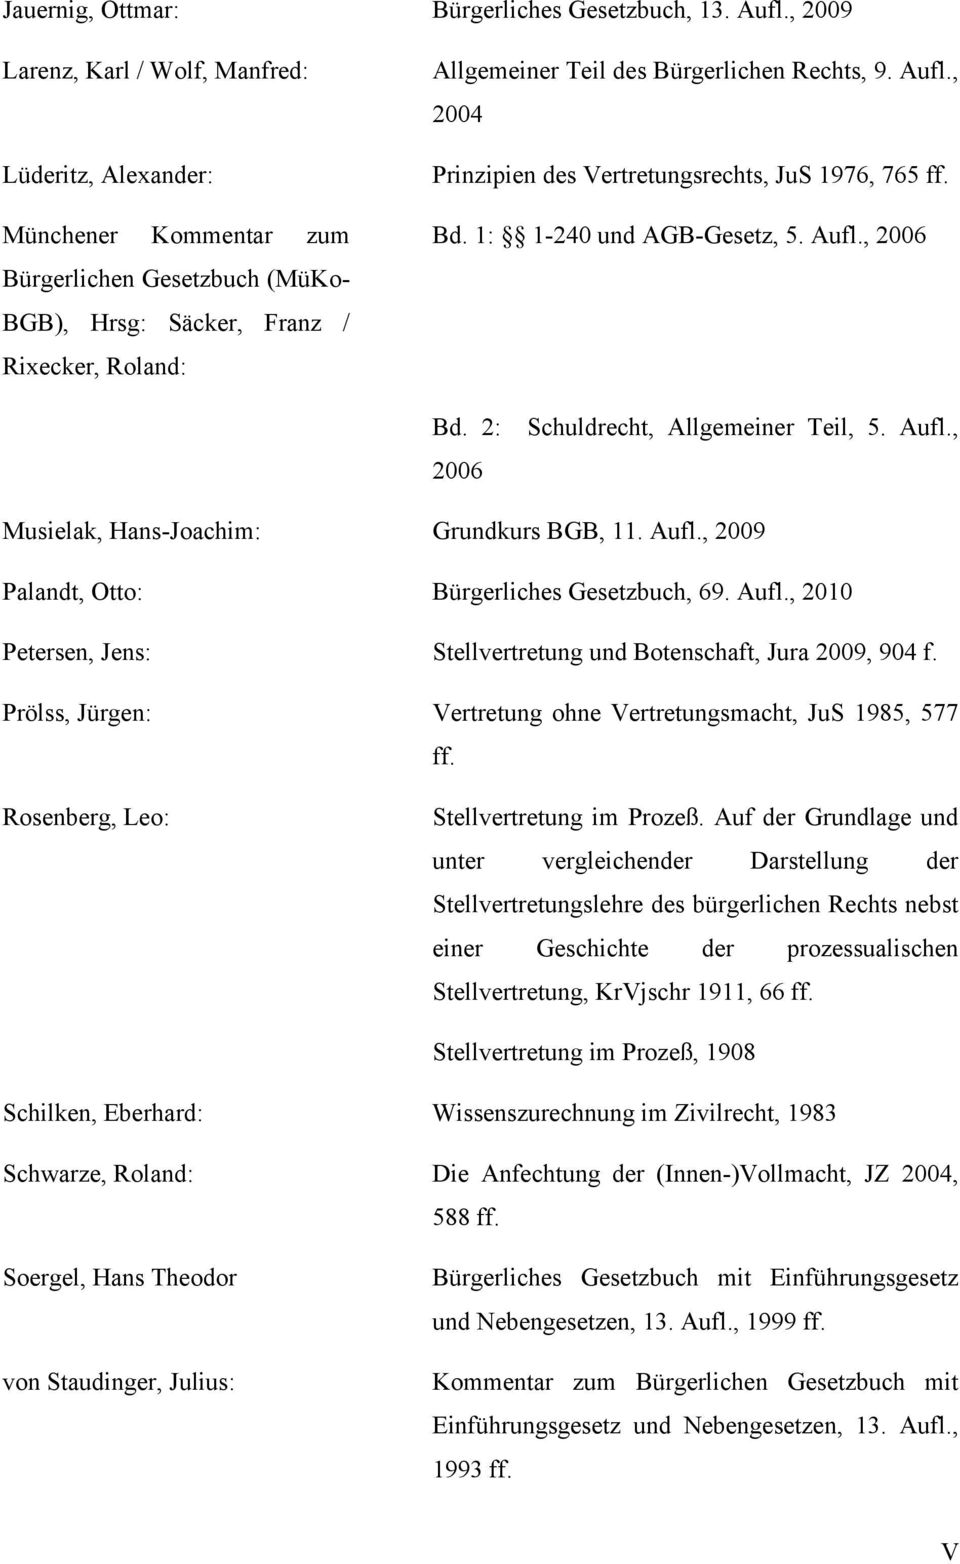 Rechts, 9. Aufl., 2004 Prinzipien des Vertretungsrechts, JuS 1976, 765 ff. Bd. 1: 1-240 und AGB-Gesetz, 5. Aufl., 2006 Bd. 2: 2006 Schuldrecht, Allgemeiner Teil, 5. Aufl., Musielak, Hans-Joachim: Grundkurs BGB, 11.